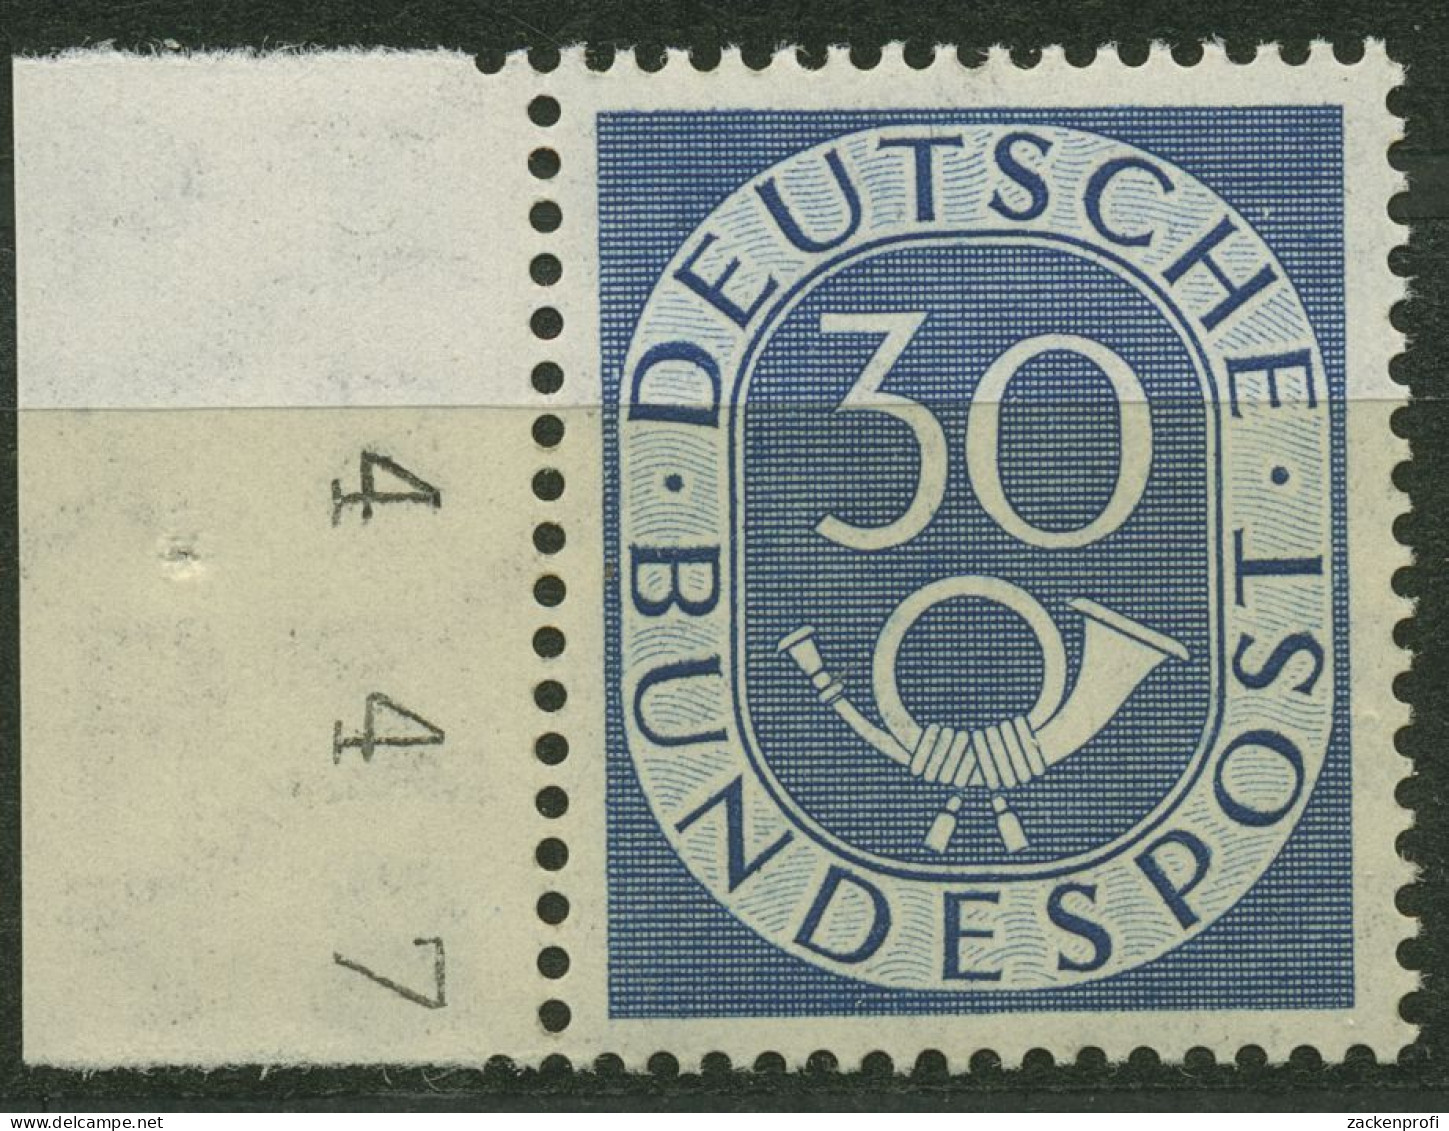 Bund 1951 Posthorn Bogenmarken Mit Seitenrand 132 SR. Li. Postfrisch Geprüft - Neufs